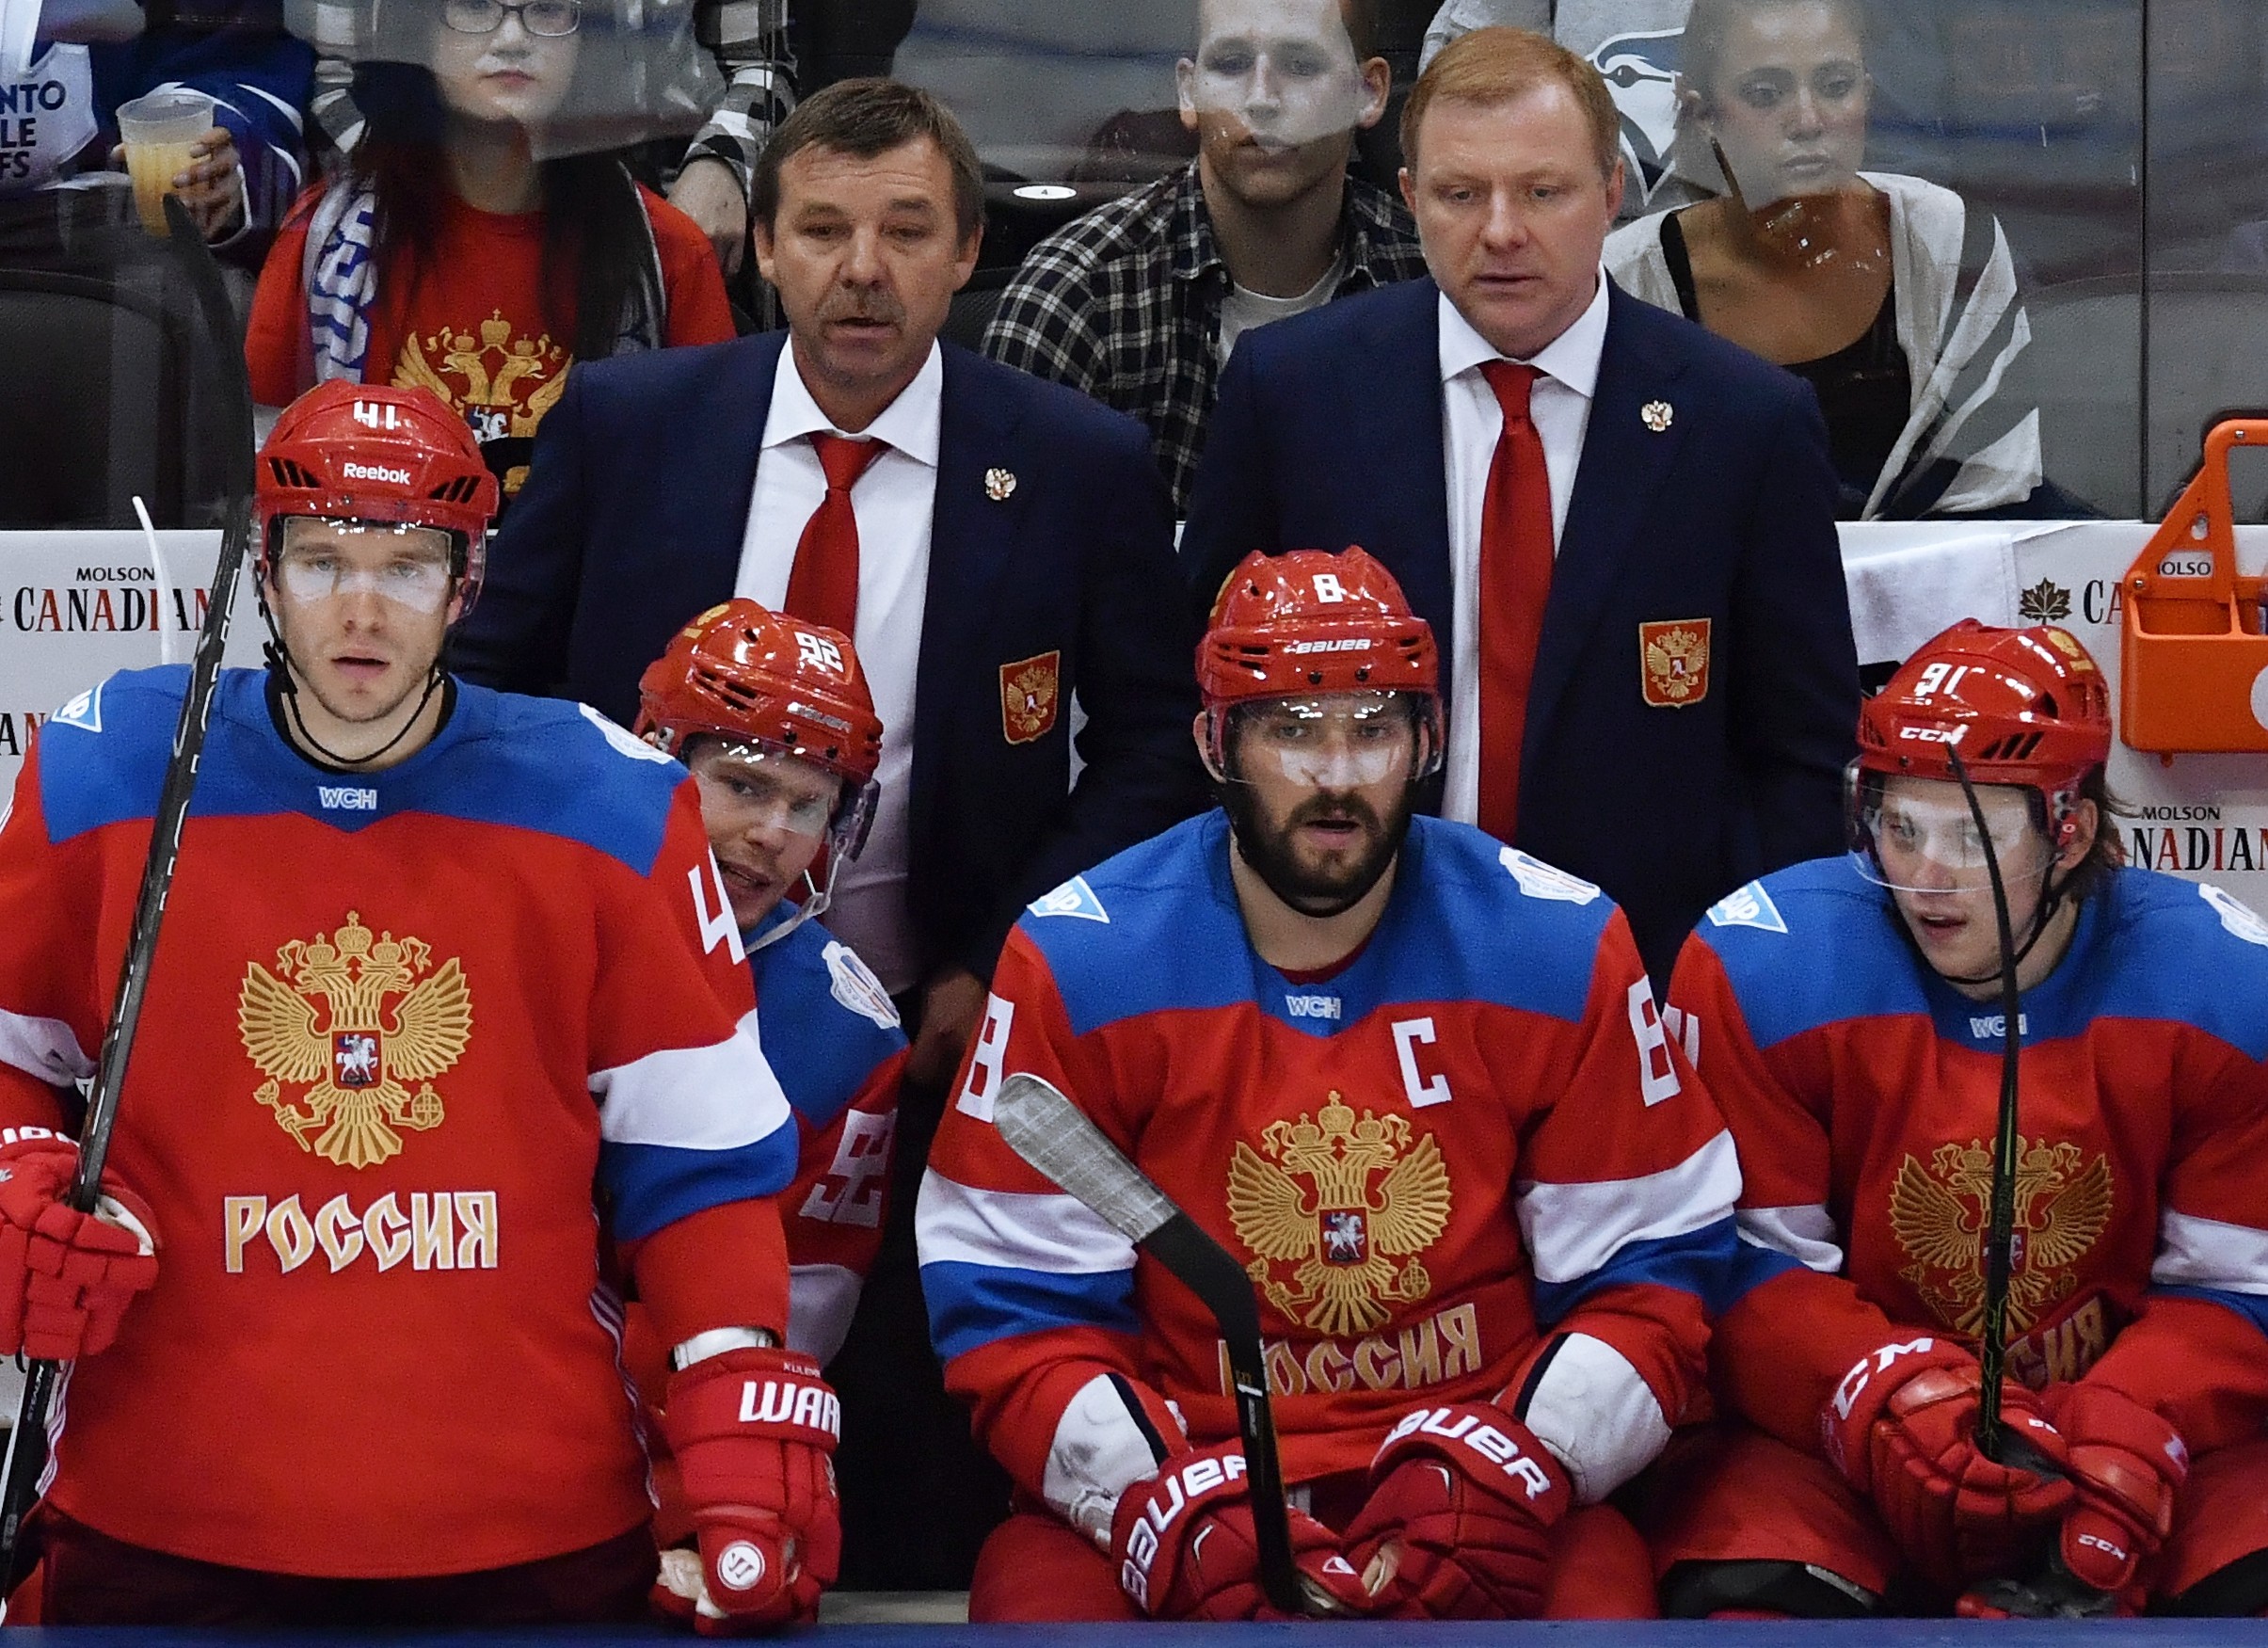 Сборная России на Кубке мира 2016 года вылетела в полуфинале, уступив Канаде. Фото: © РИА Новости/Алексей Куденко